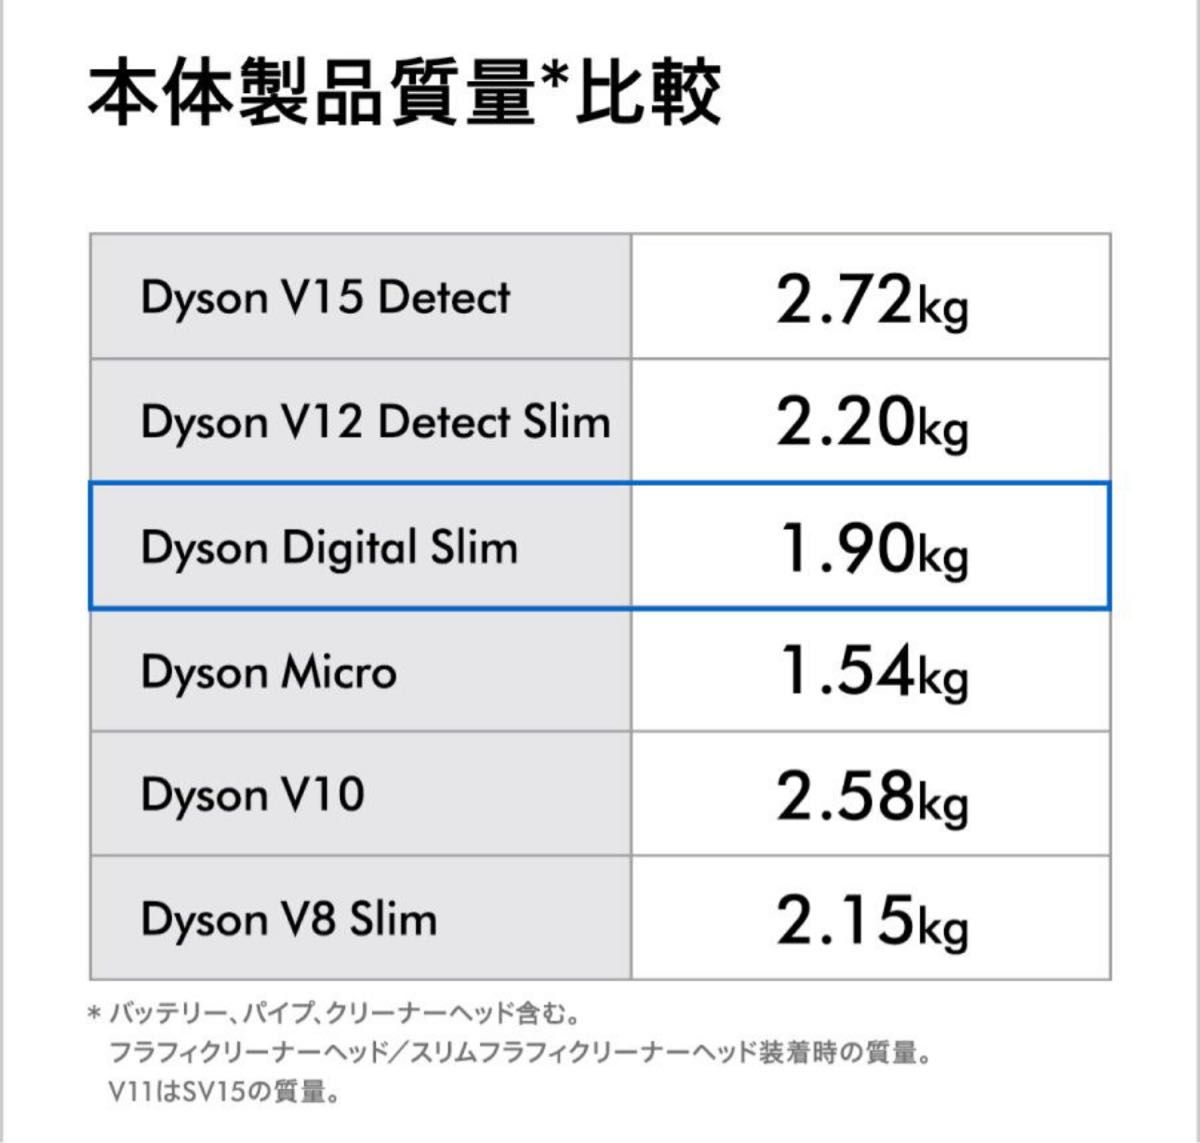 Dyson Digital Slim+ dyson SV18FF COM2